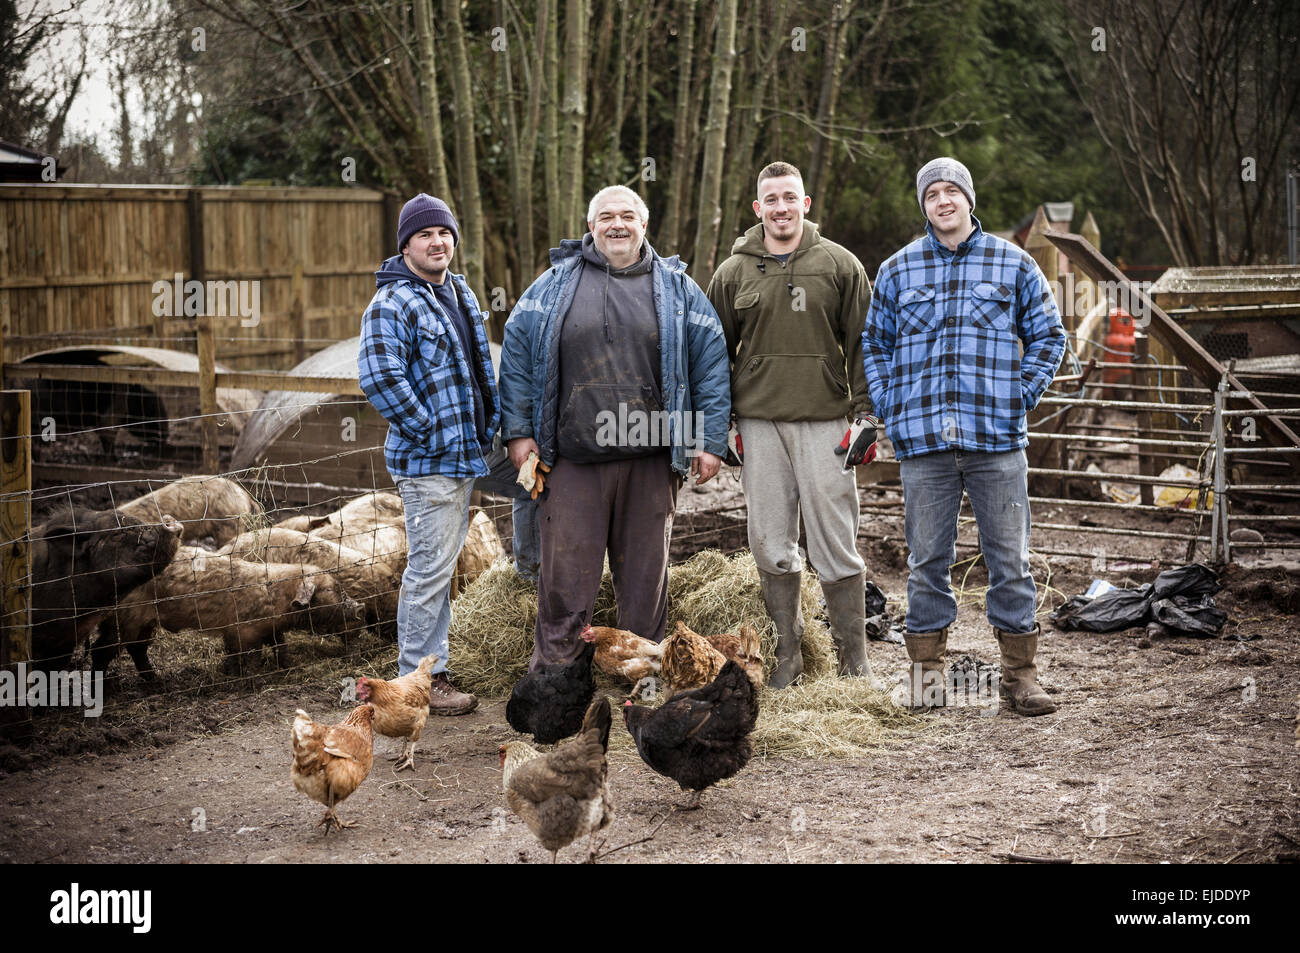 Vier arbeiten Männer, Brüder und ein anderer Mann in einer Reihe, in einem Hof neben einem Stift voll von jungen Schweinen. Stockfoto